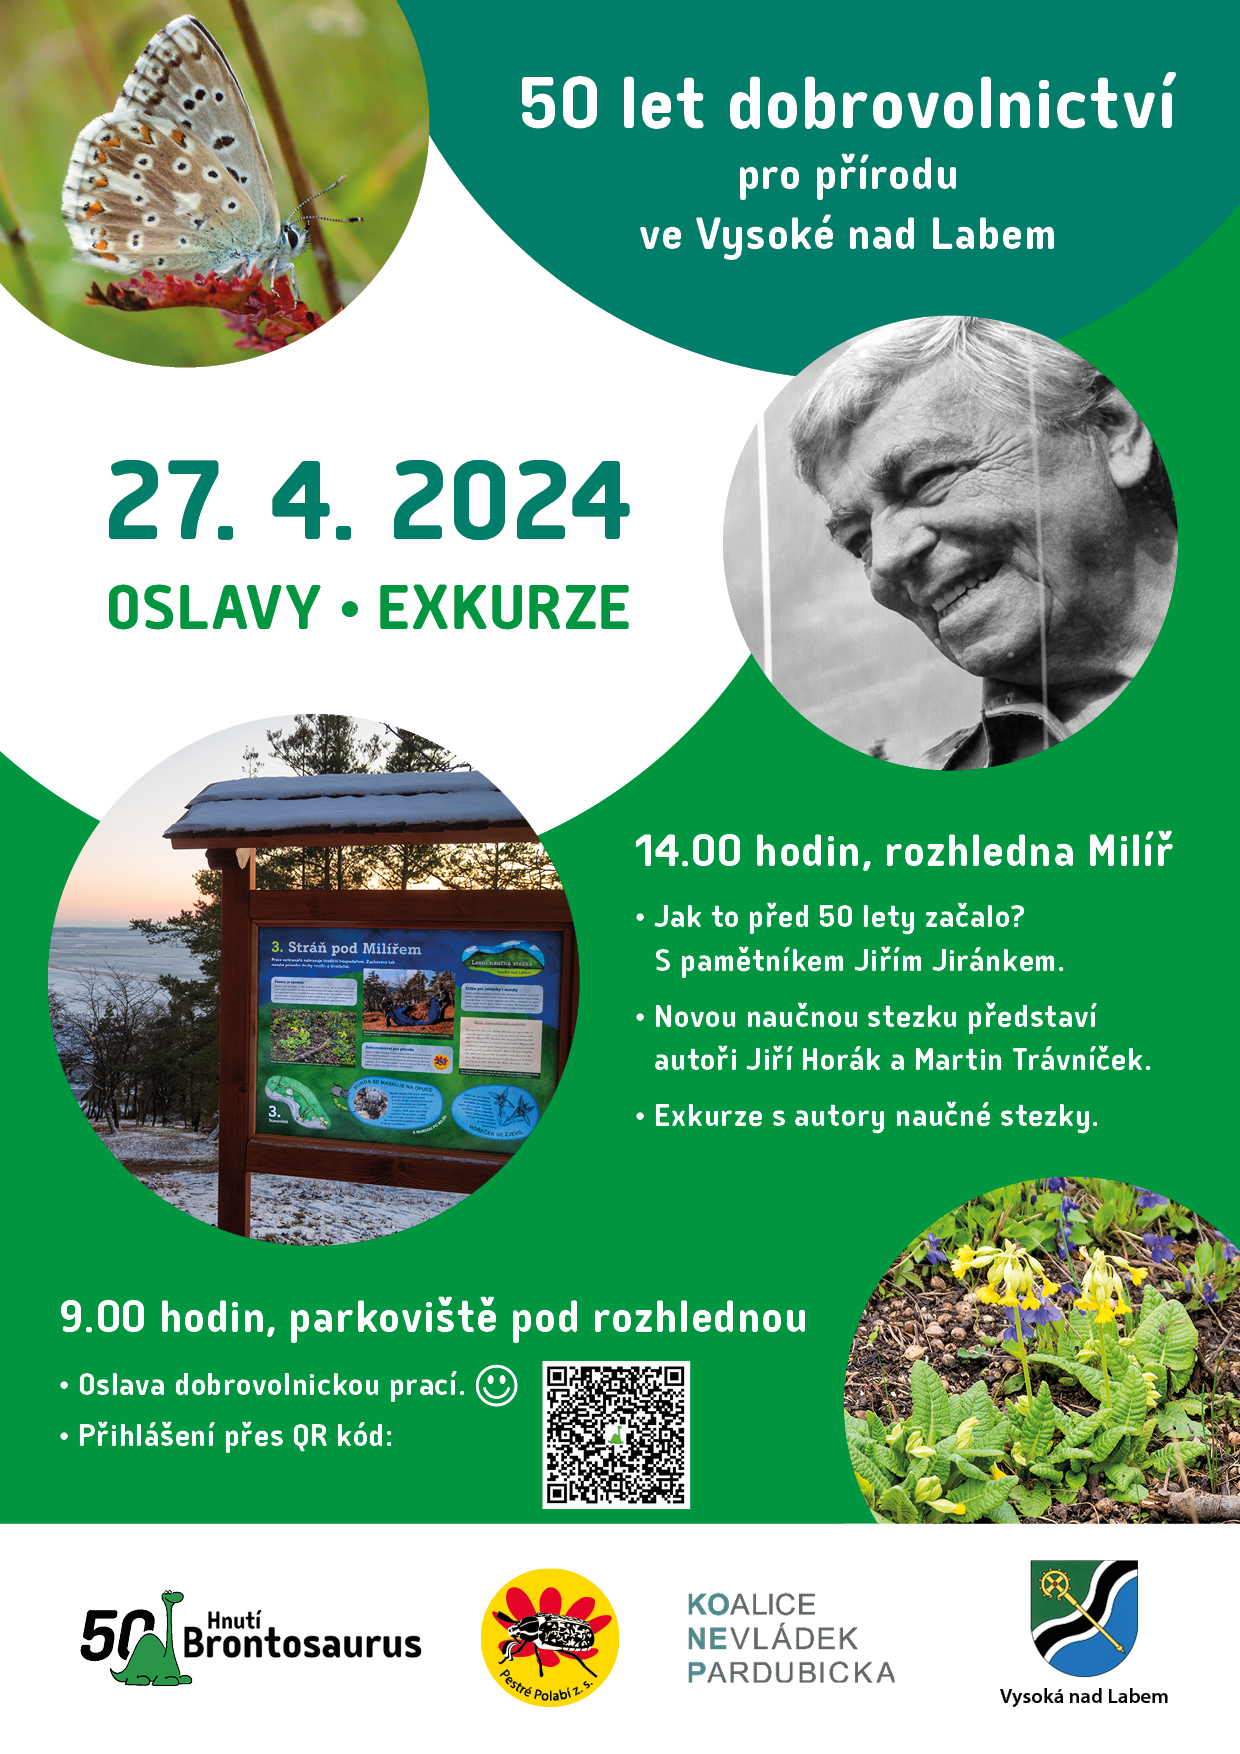 Komunita pro komunitu: 50 let dobrovolnictví pro přírodu ve Vysoké nad Labem